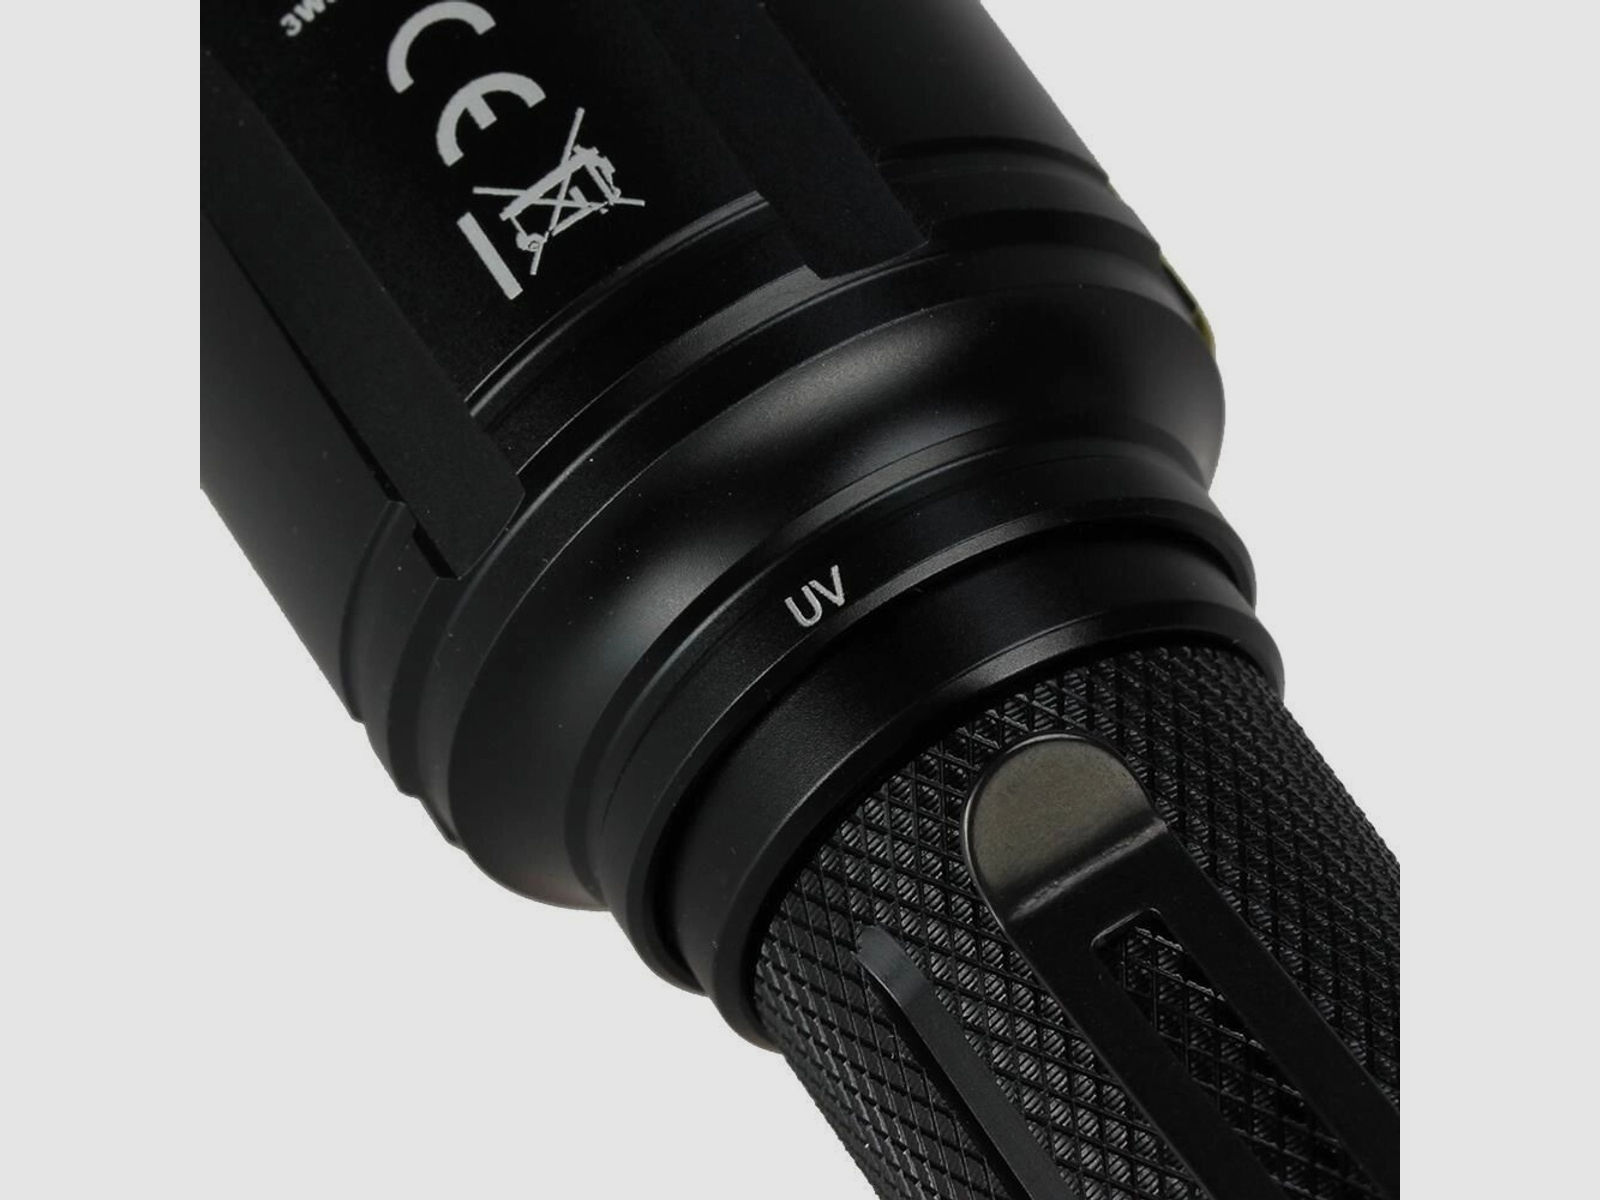 Fenix	 TK25 UV LED